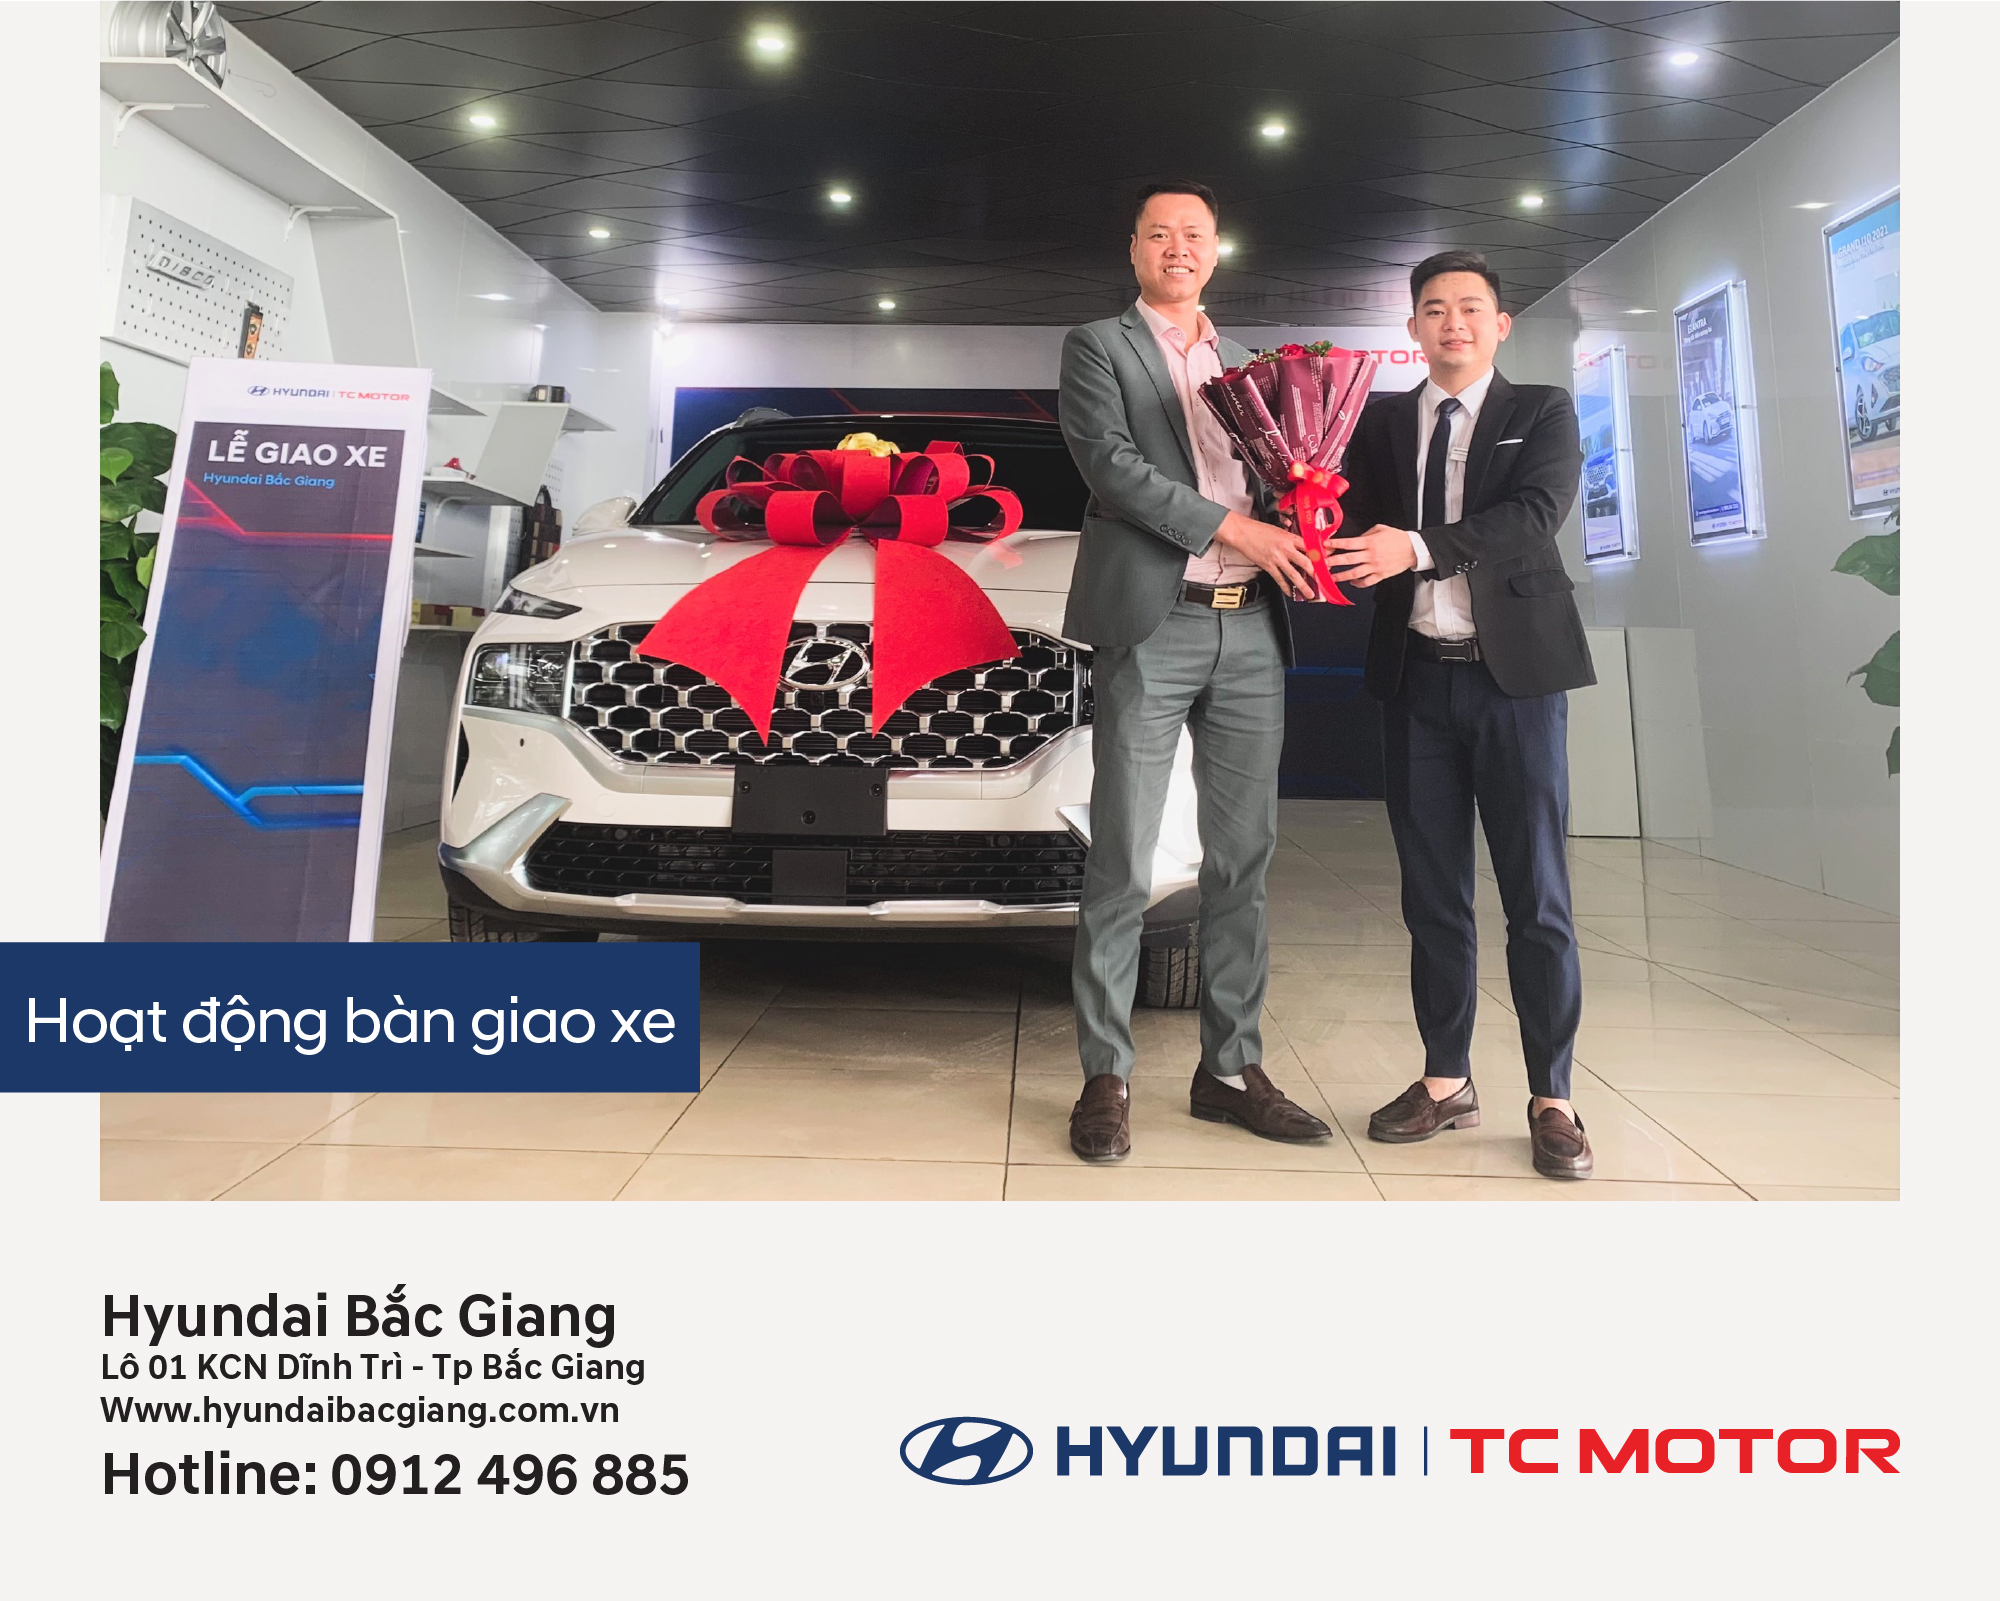 Hyundai Bắc Giang trân trọng bàn giao xe  Hyundai SantaFe đến khách hàng (Anh) Đoaàn Đắc Thoại